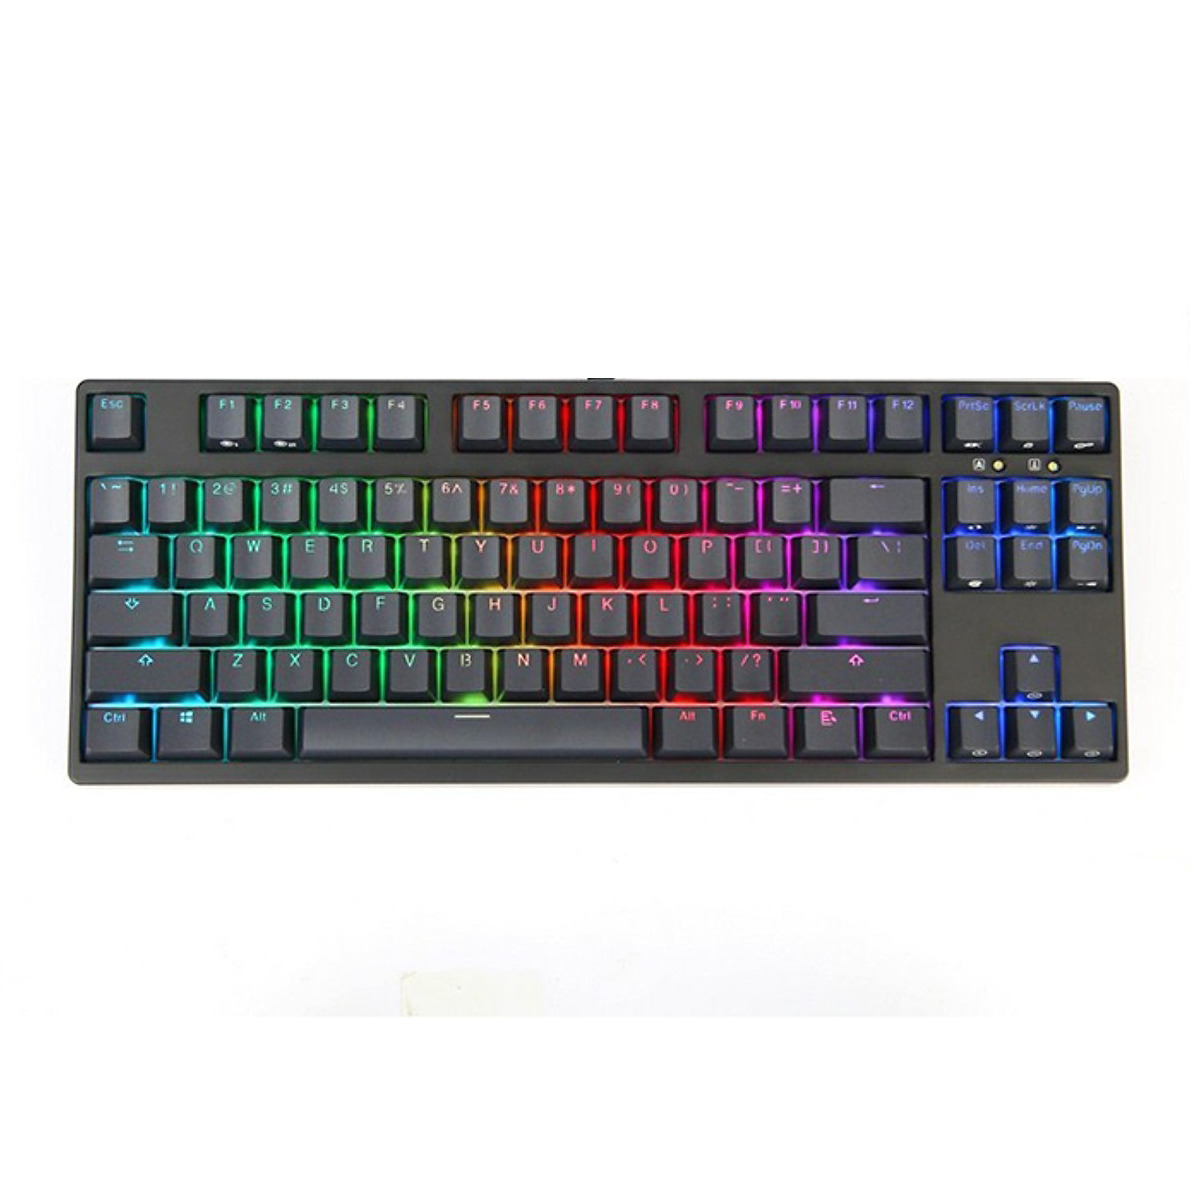 Bàn phím - Keyboard Durgod V87s RGB